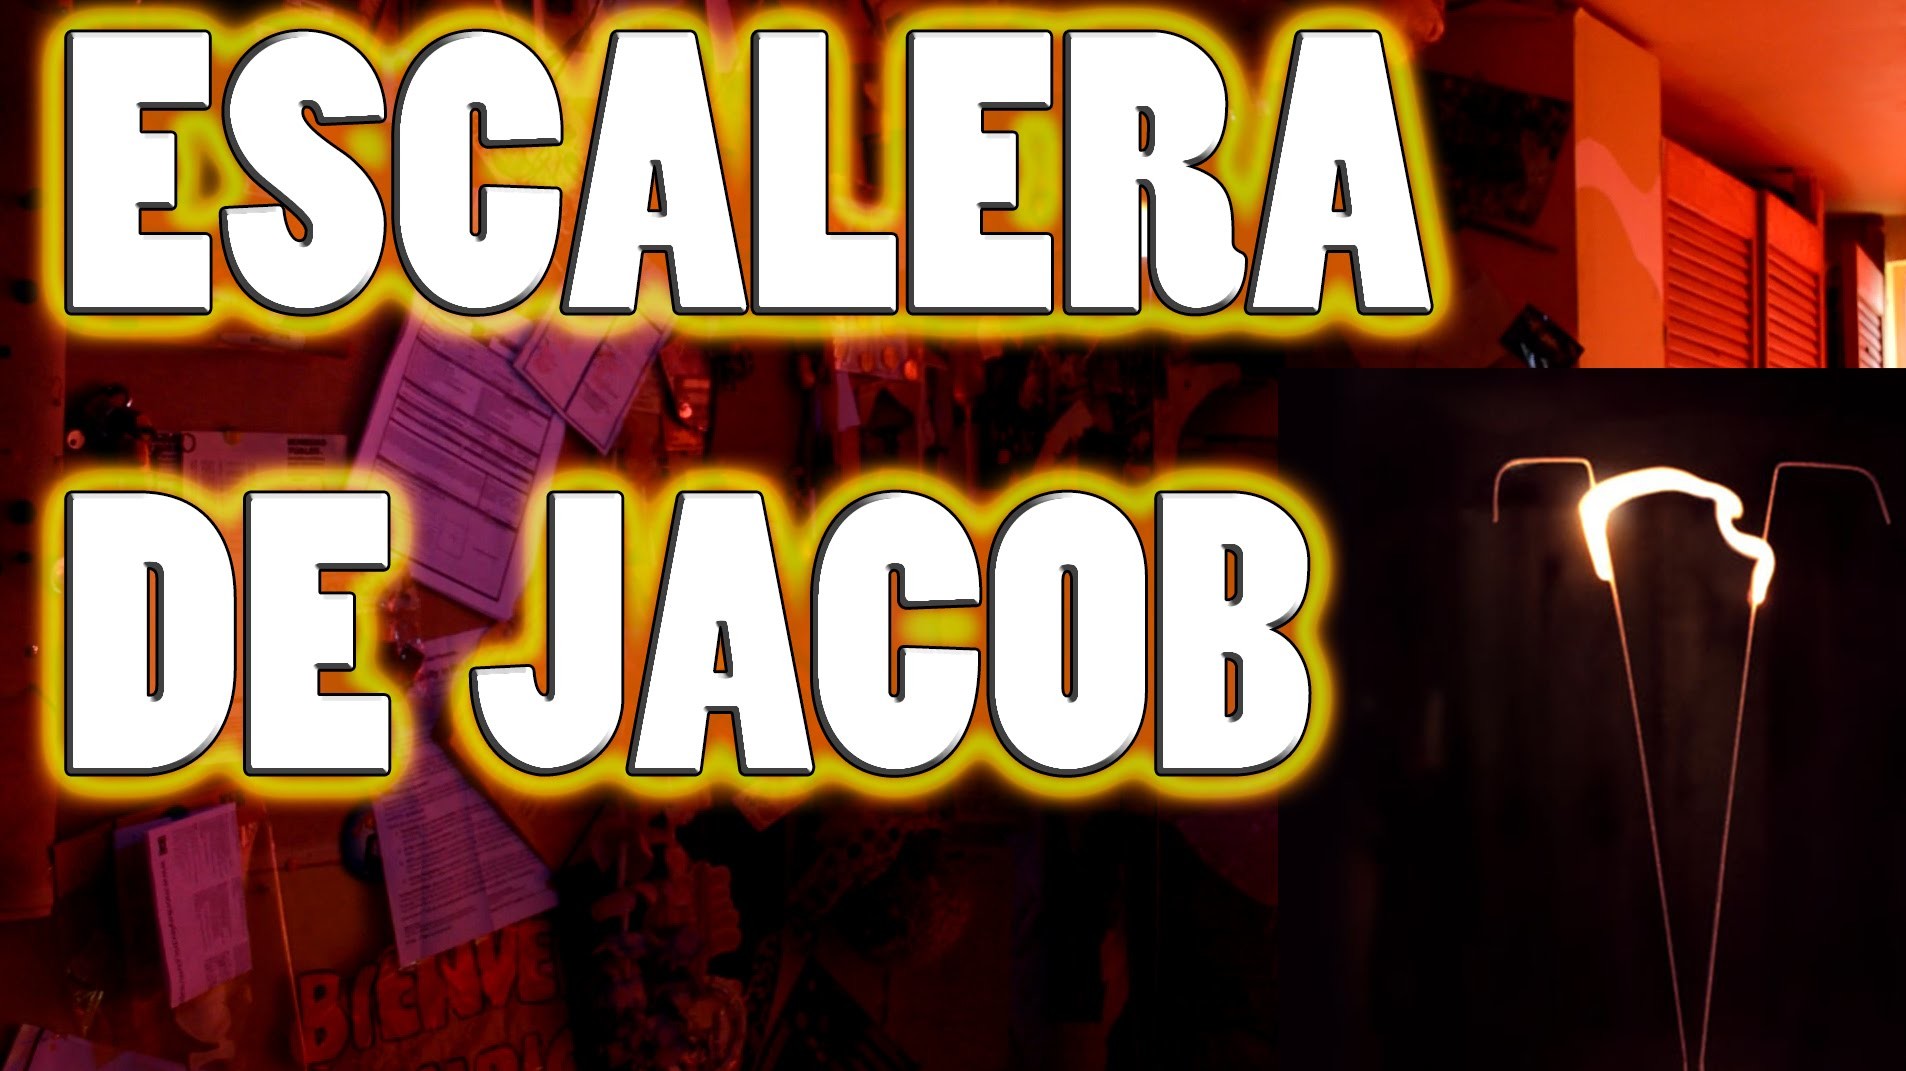 Como hacer una escalera de Jacob con un microondas! How to jacob's ladder! | NQUEH